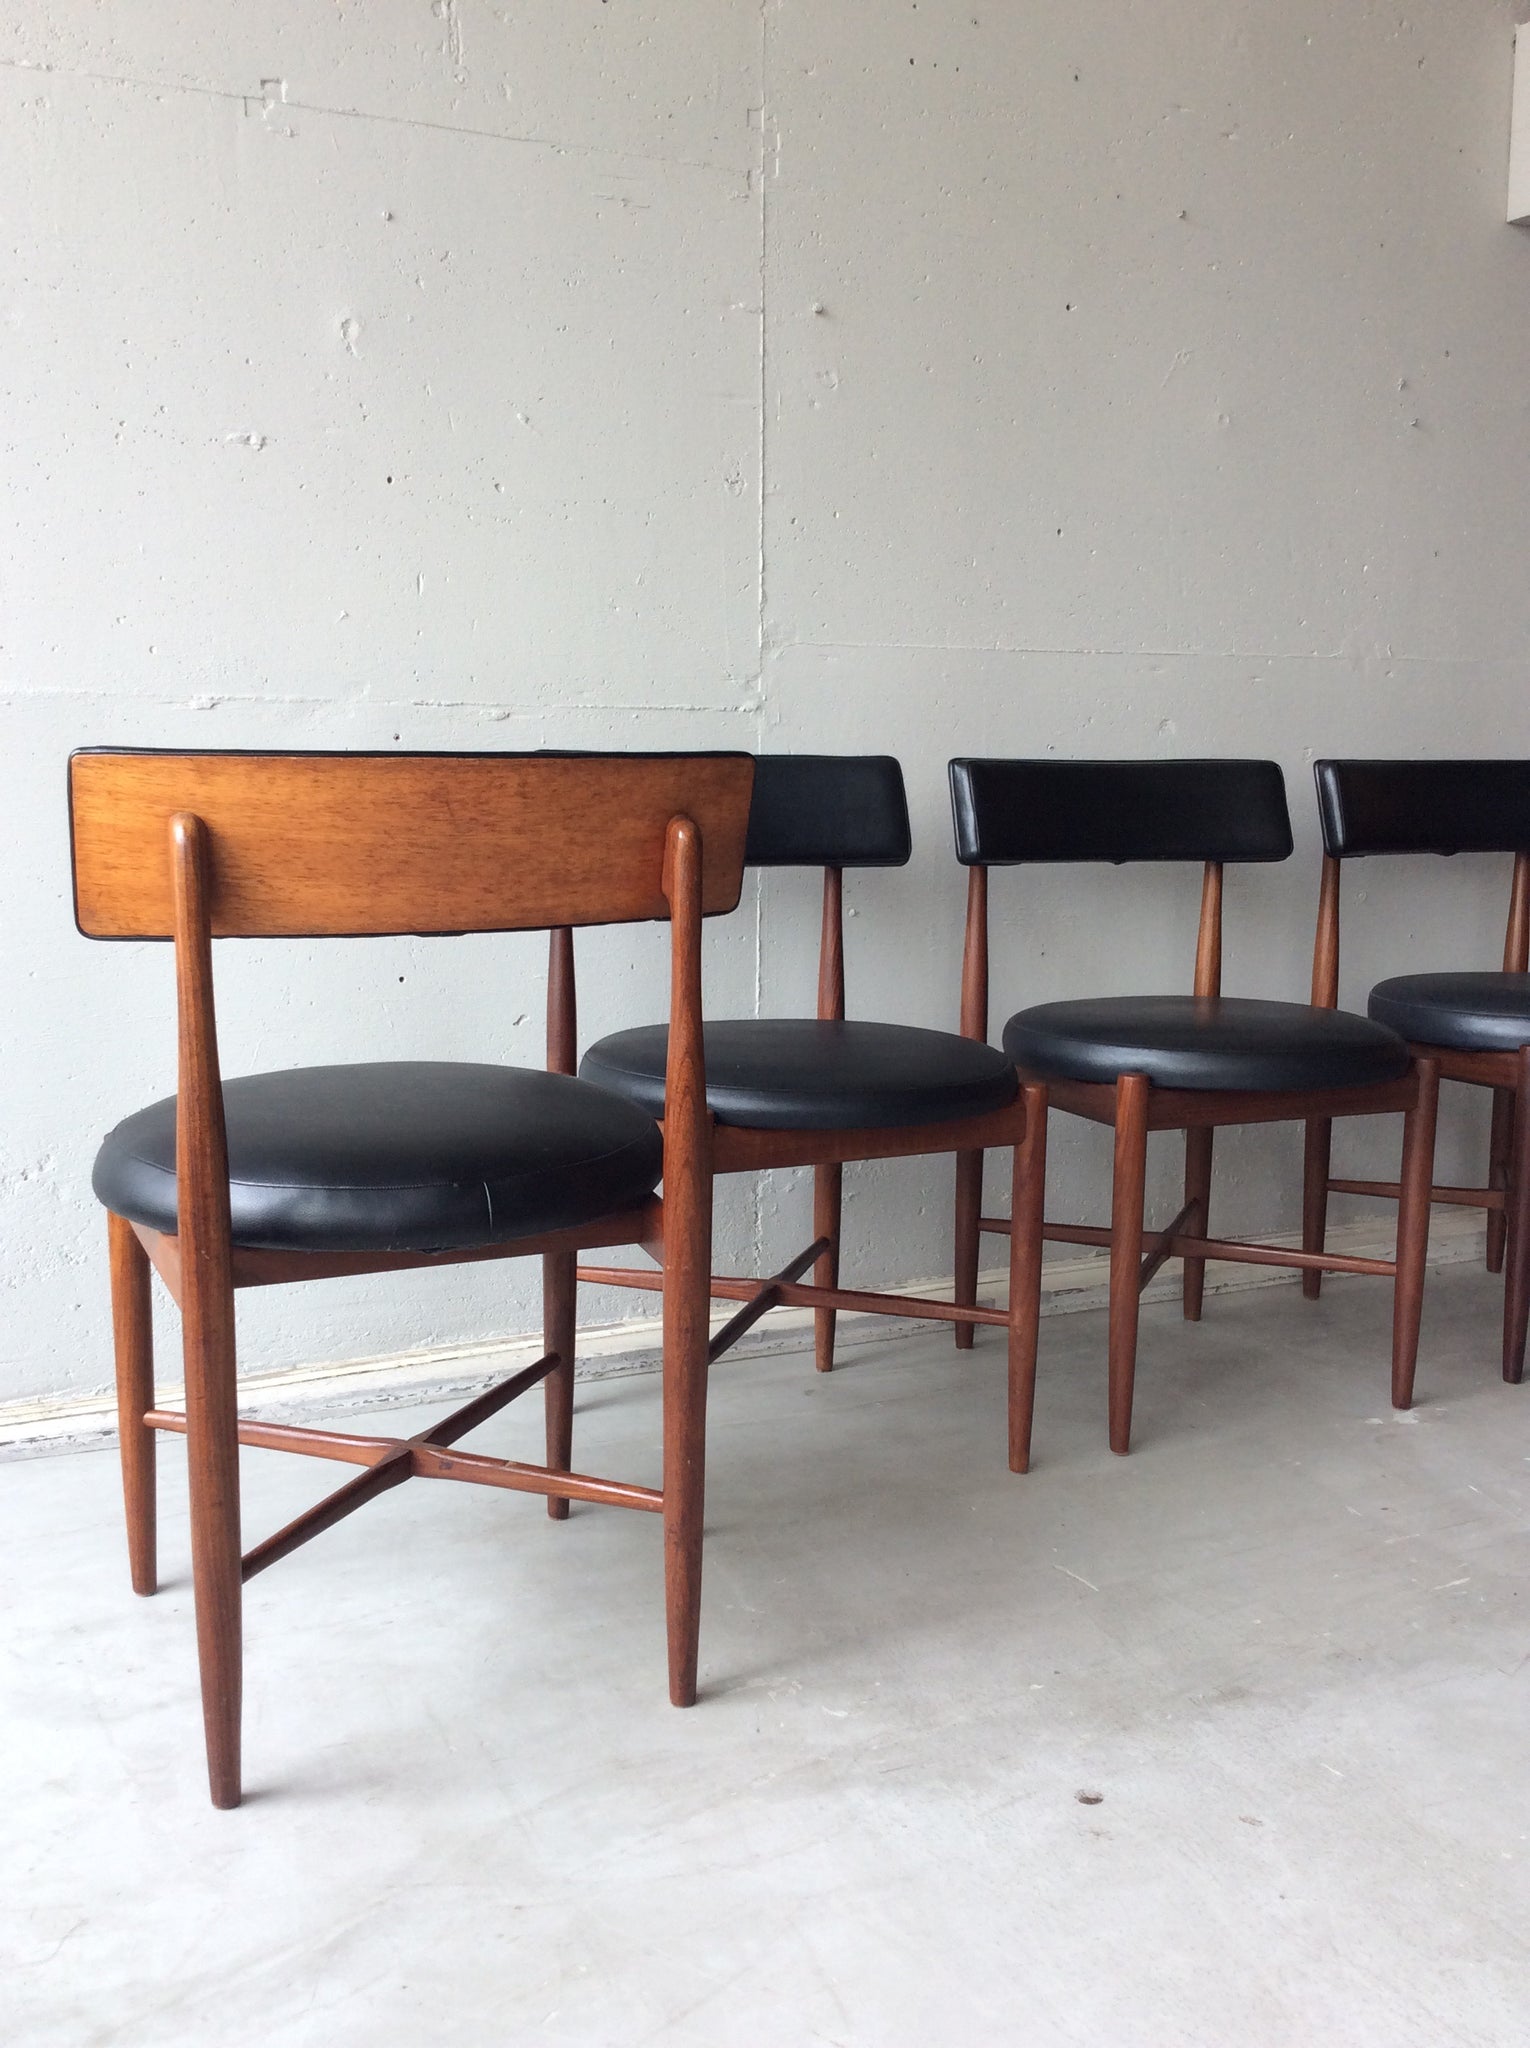 ジープラン フレスコ ダイニング チェア 4脚セット / g-plan fresco dining chairs set of 4 #0169